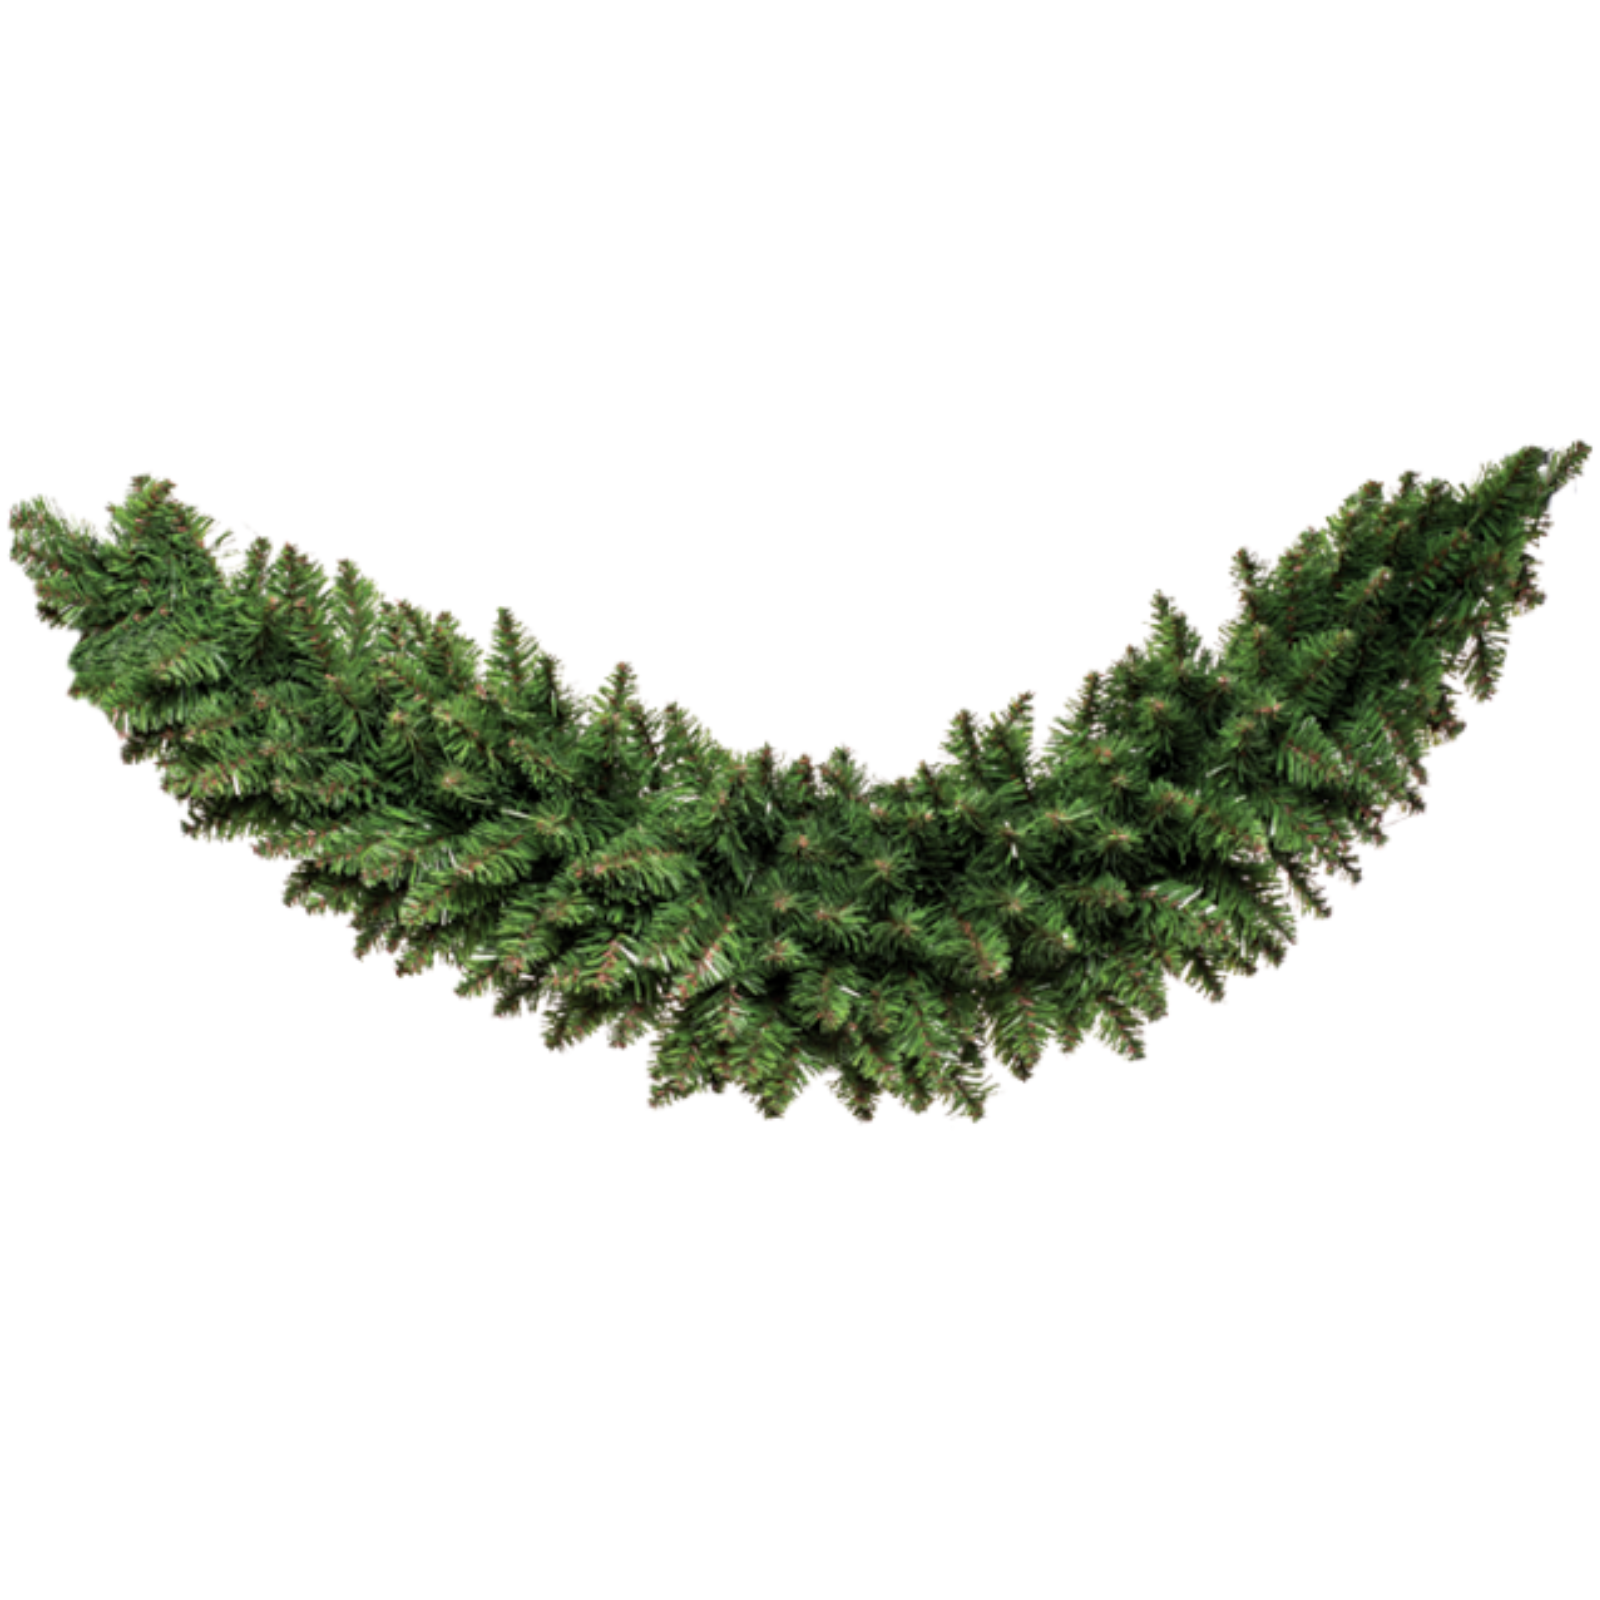 Ghirlanda natalizia festone verde artificiale in pvc 120 cm con 280 rami